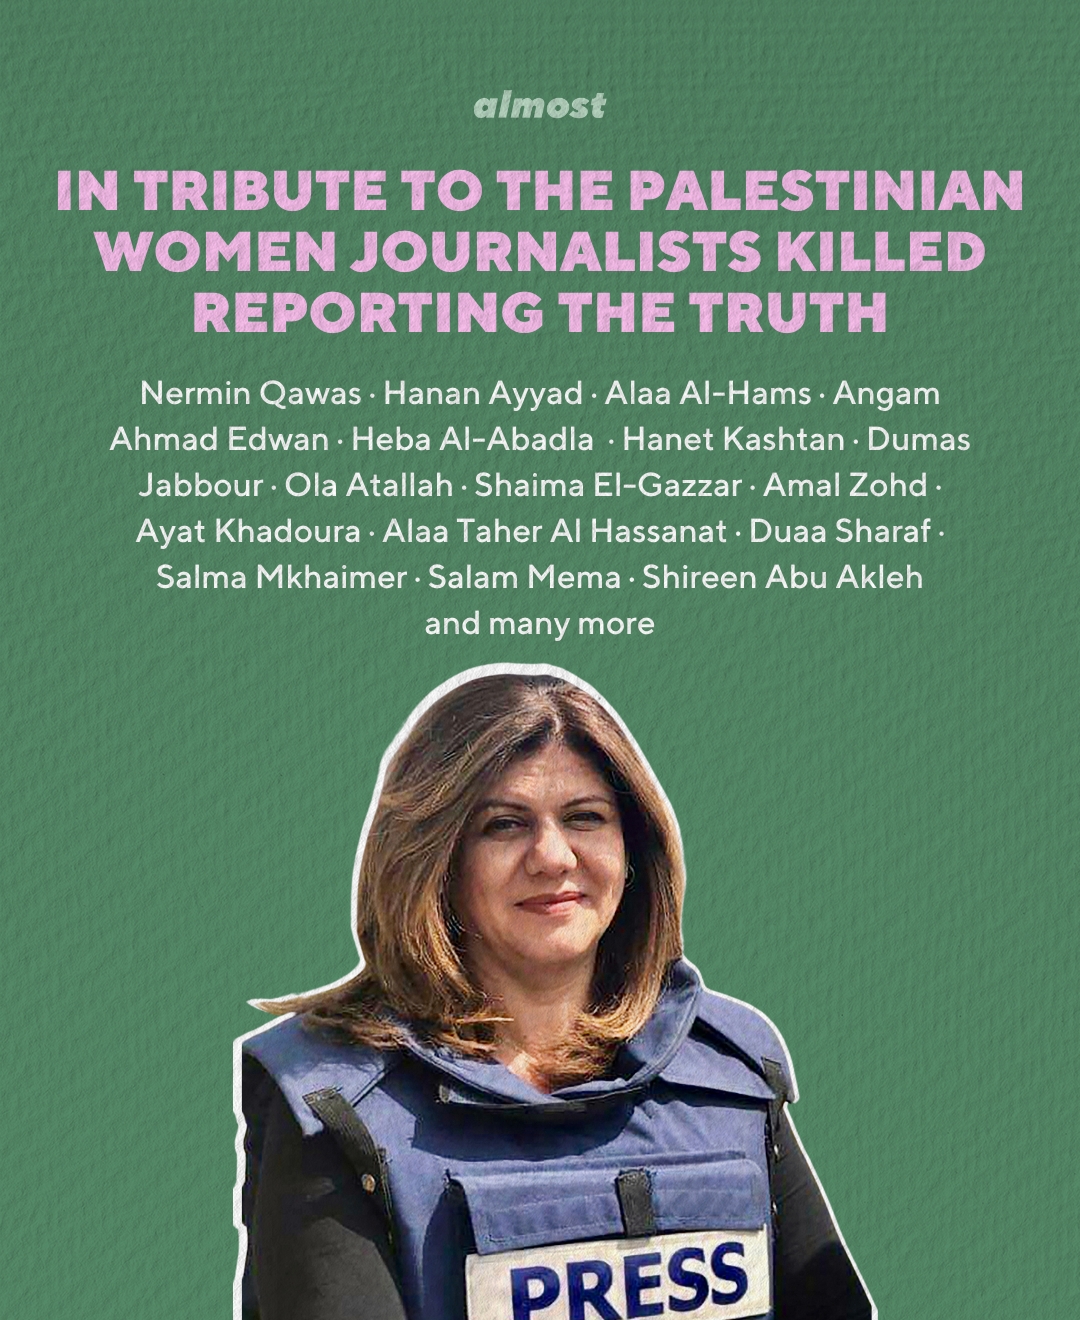 8 Palestinian Women Journalists You Should Follow